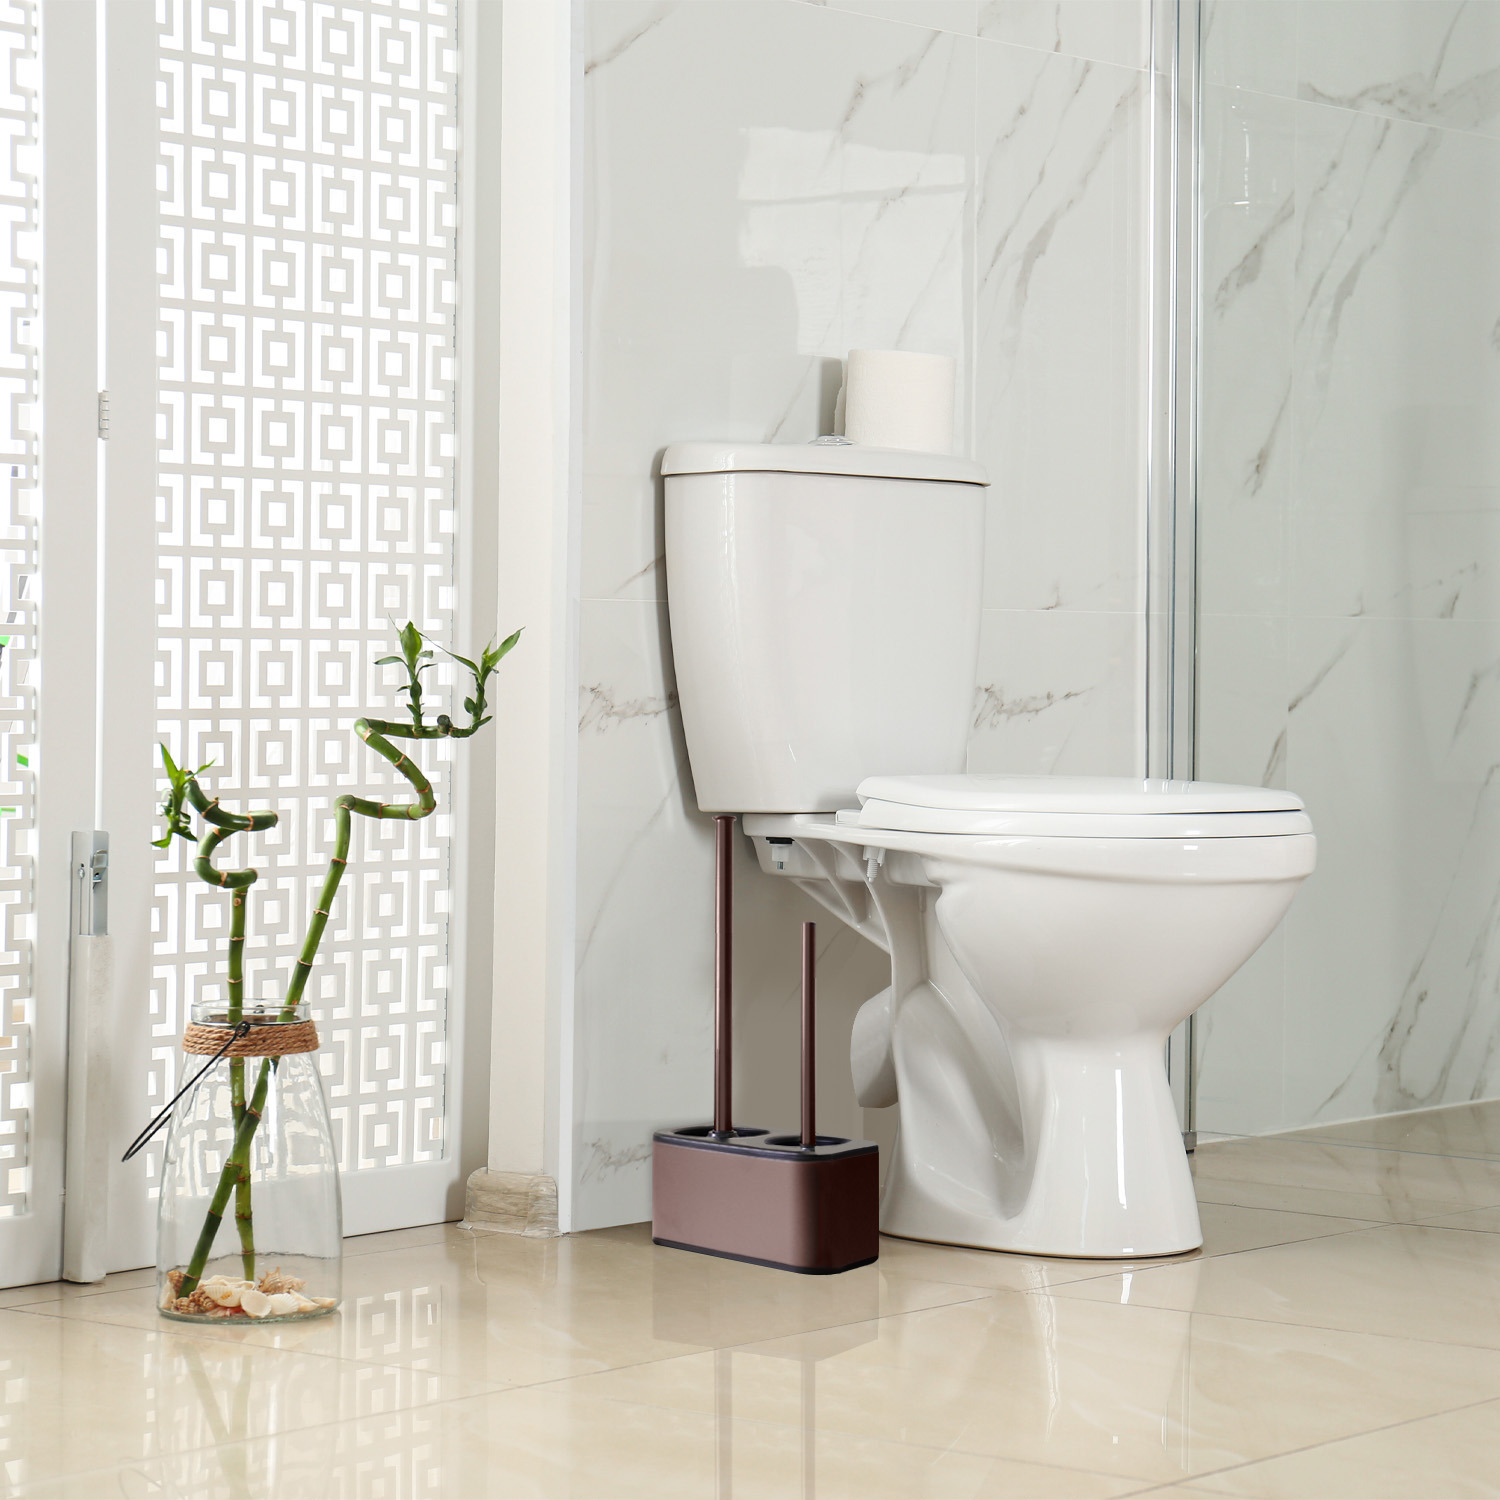 modern sleek toilet bowl brush and Toilet plunger combo - Bronze